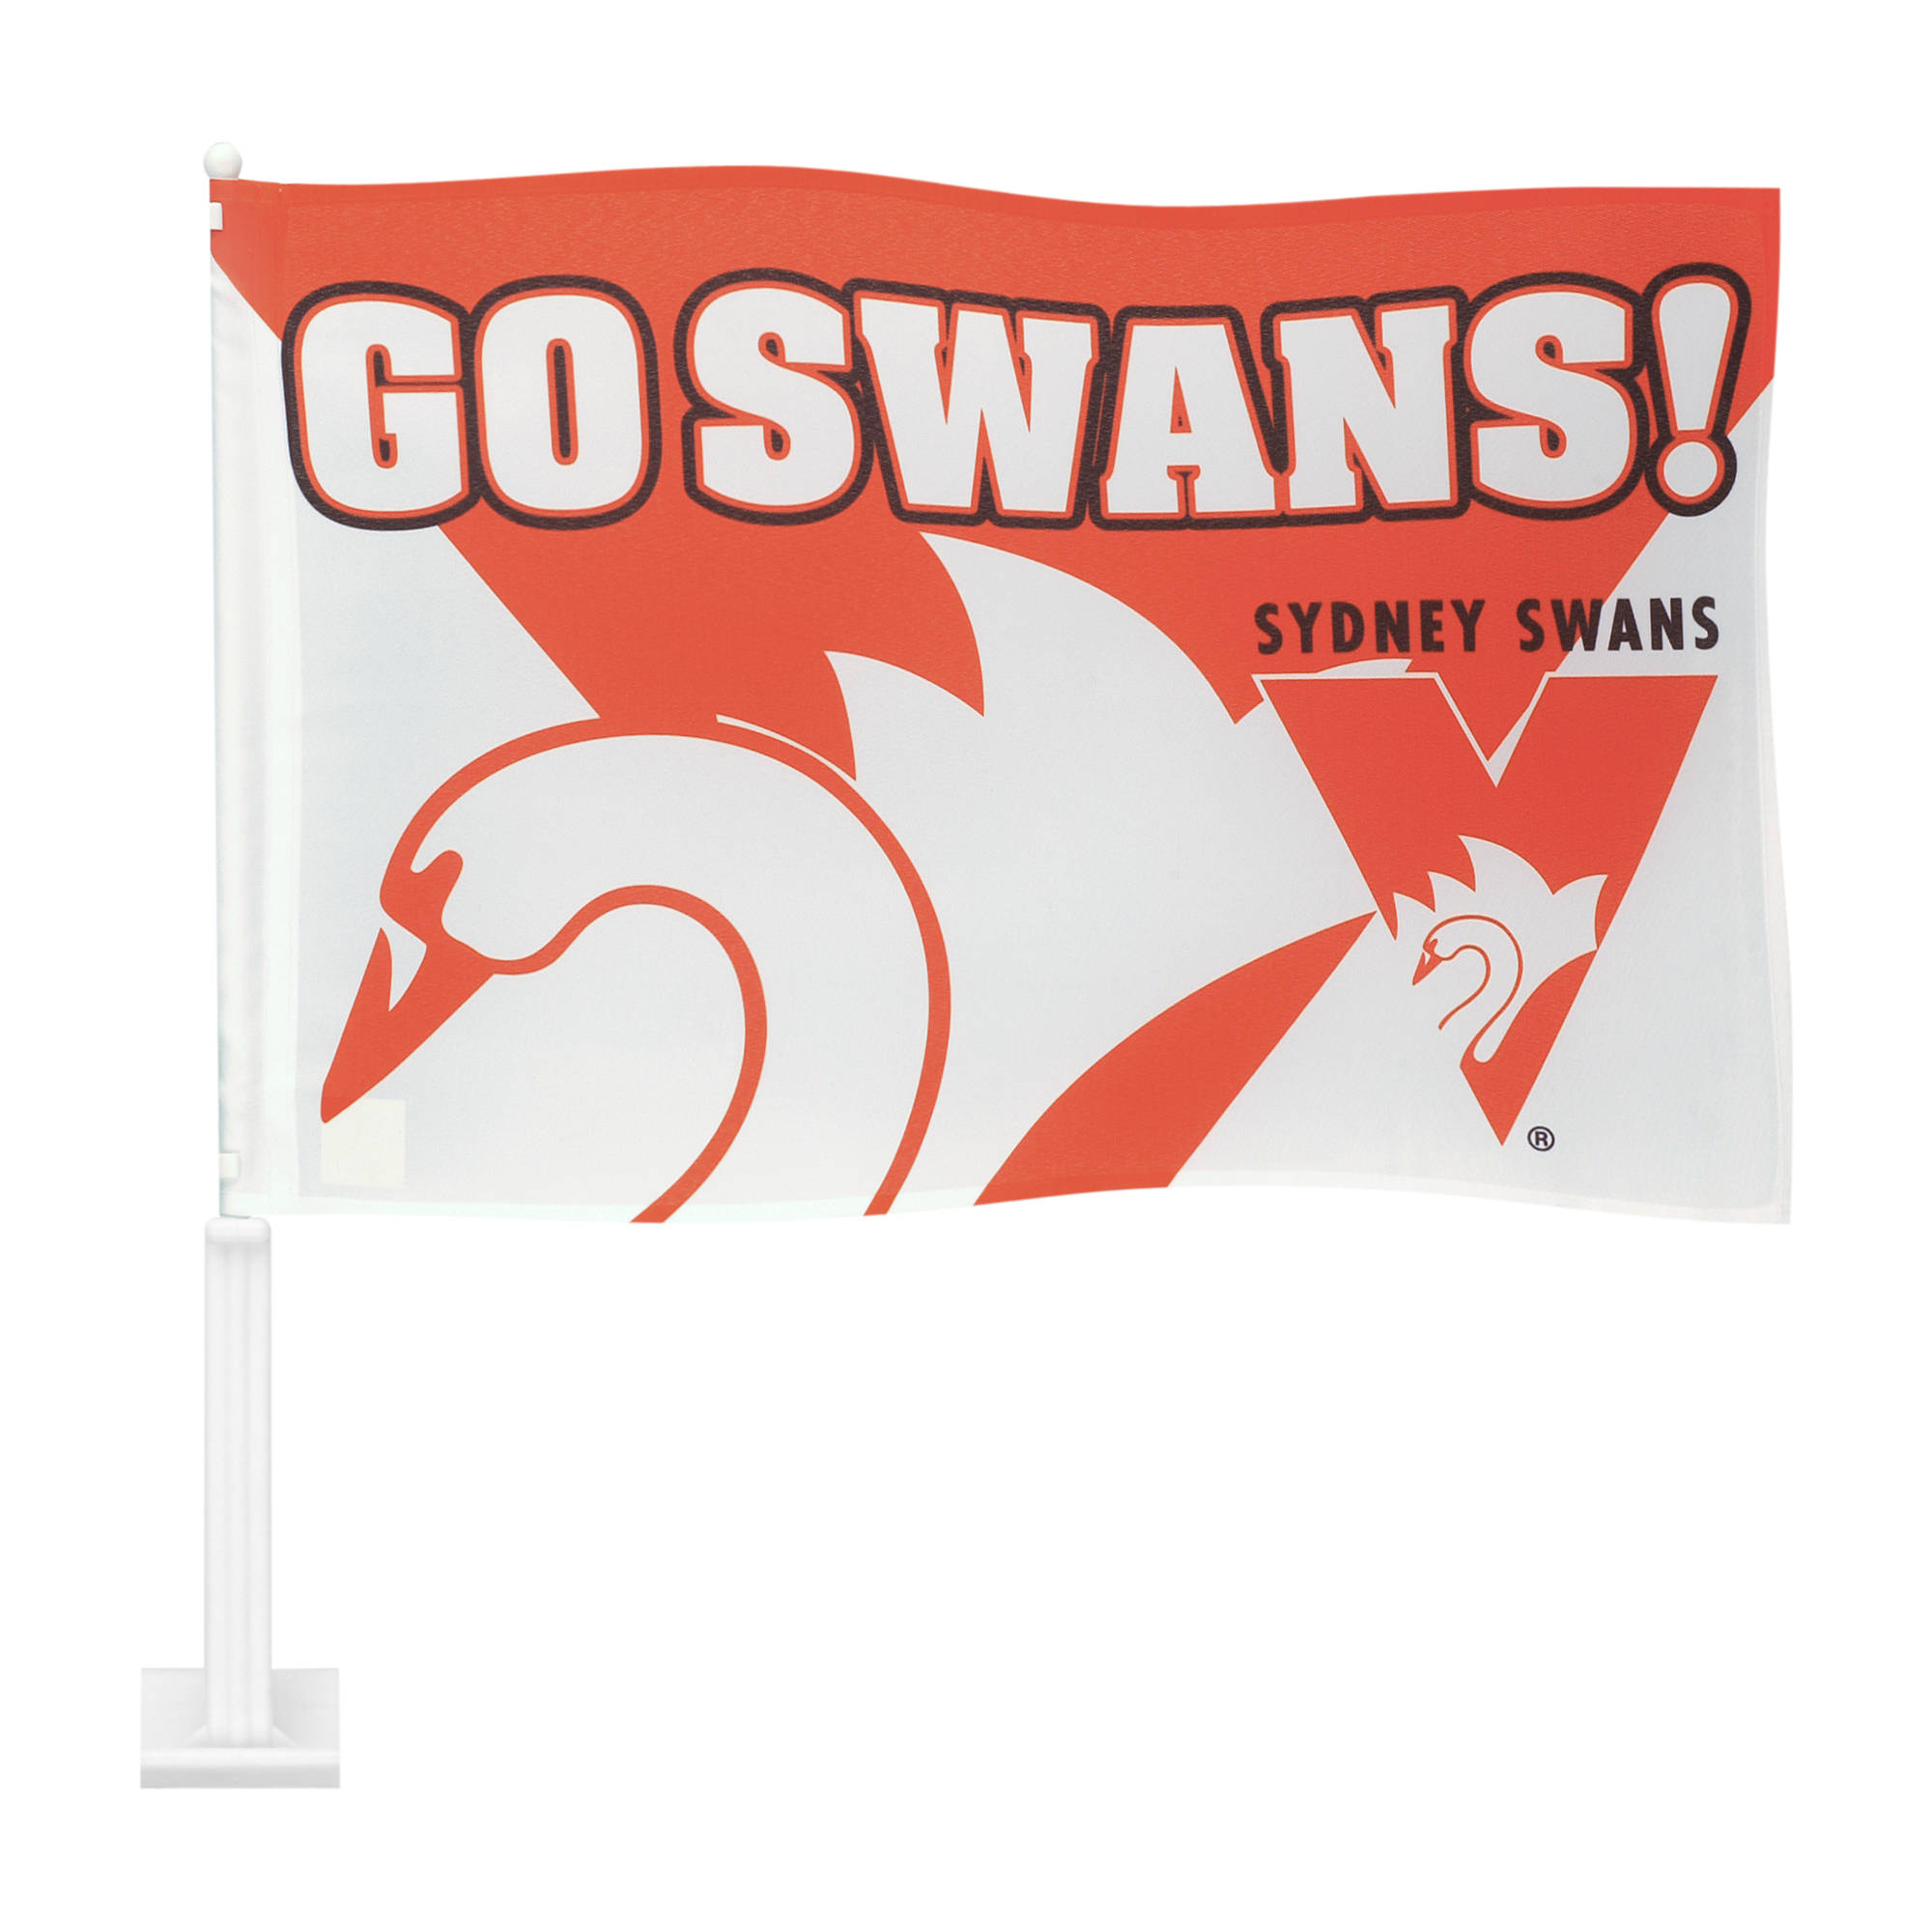 Sydney Swans Backgrounds, Compatible - PC, Mobile, Gadgets| 2000x2000 px